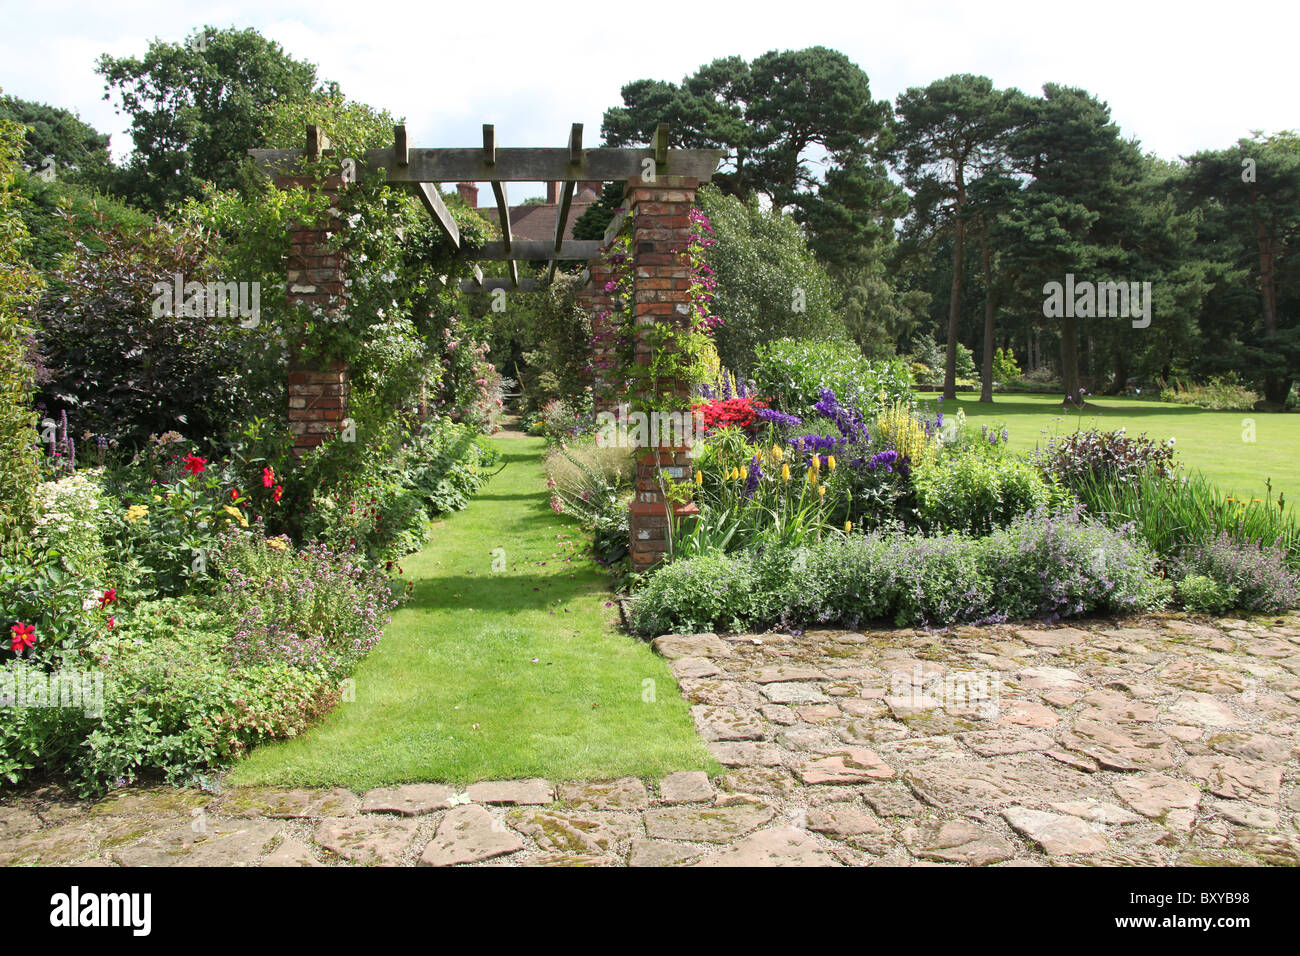 Abbeywood Garten, Cheshire. Malerische Sommer Ansicht der krautige Grenze innerhalb des Gartens Abbeywood Pergola Fuß. Stockfoto